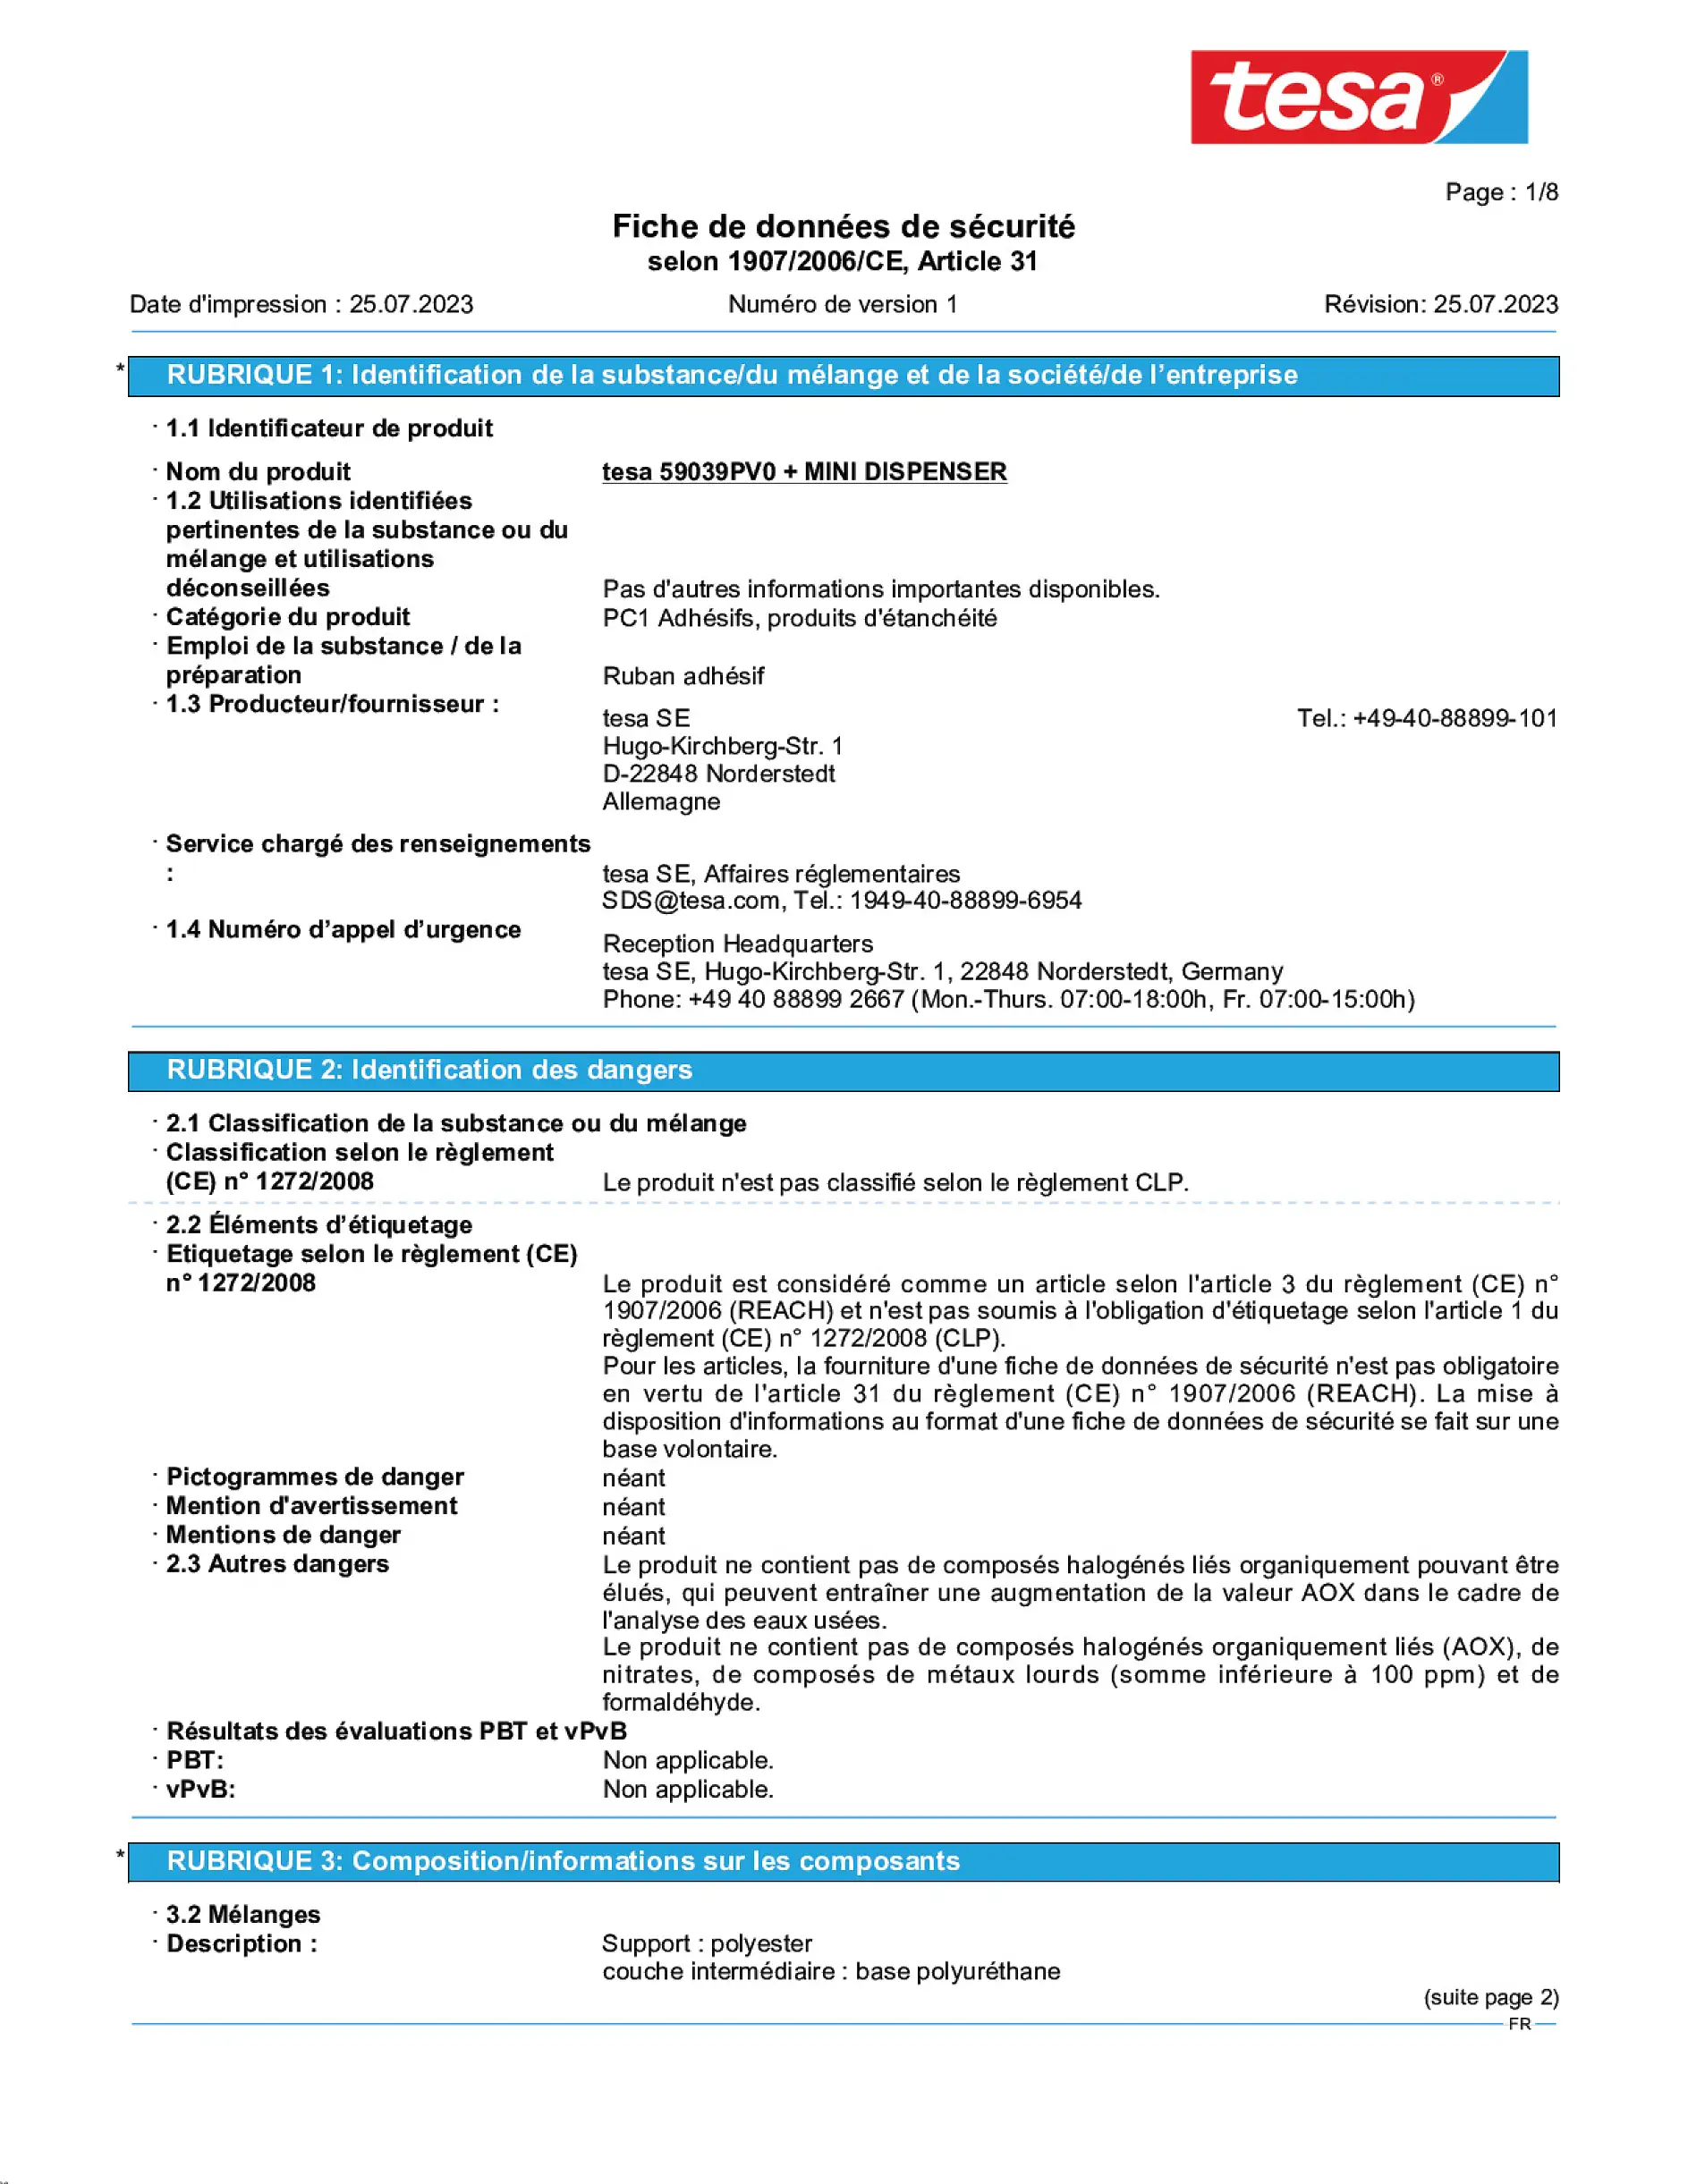 Safety data sheet_tesafilm® 59038_fr-FR_v1